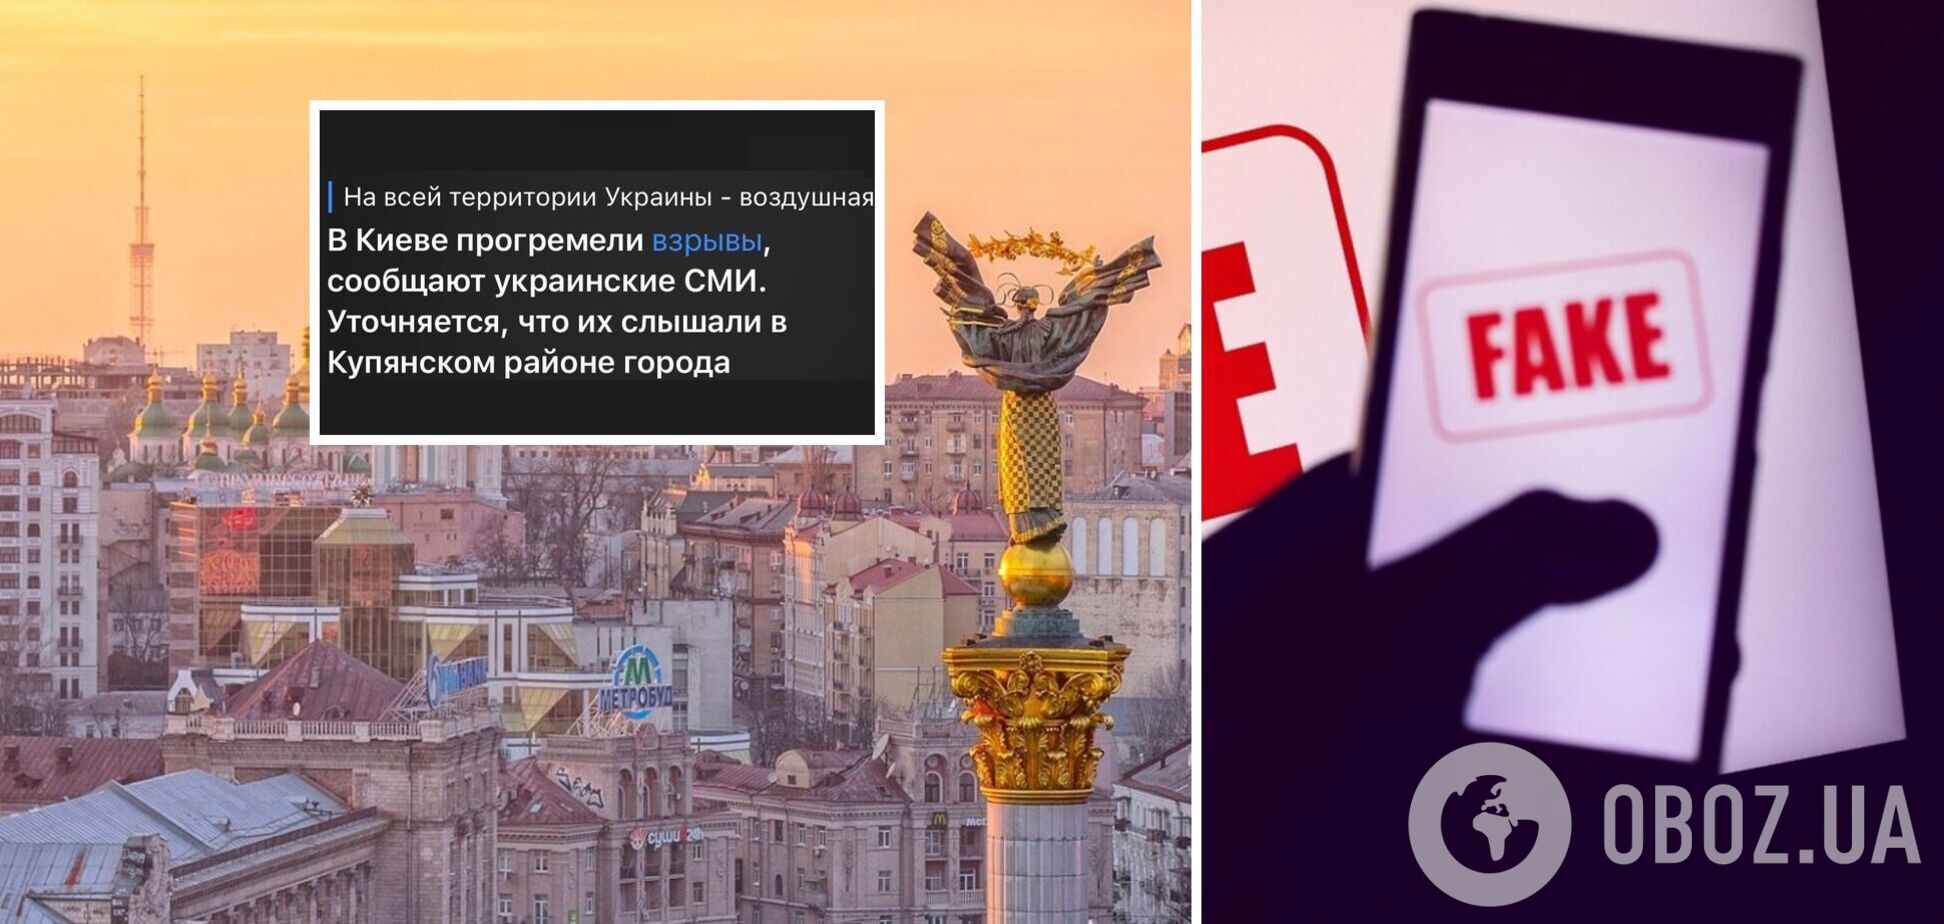 'Кияни, хто з Куп'янського району? Відгукніться!': пропагандисти Путіна заявили про вибухи в Києві й феєрично осоромилися